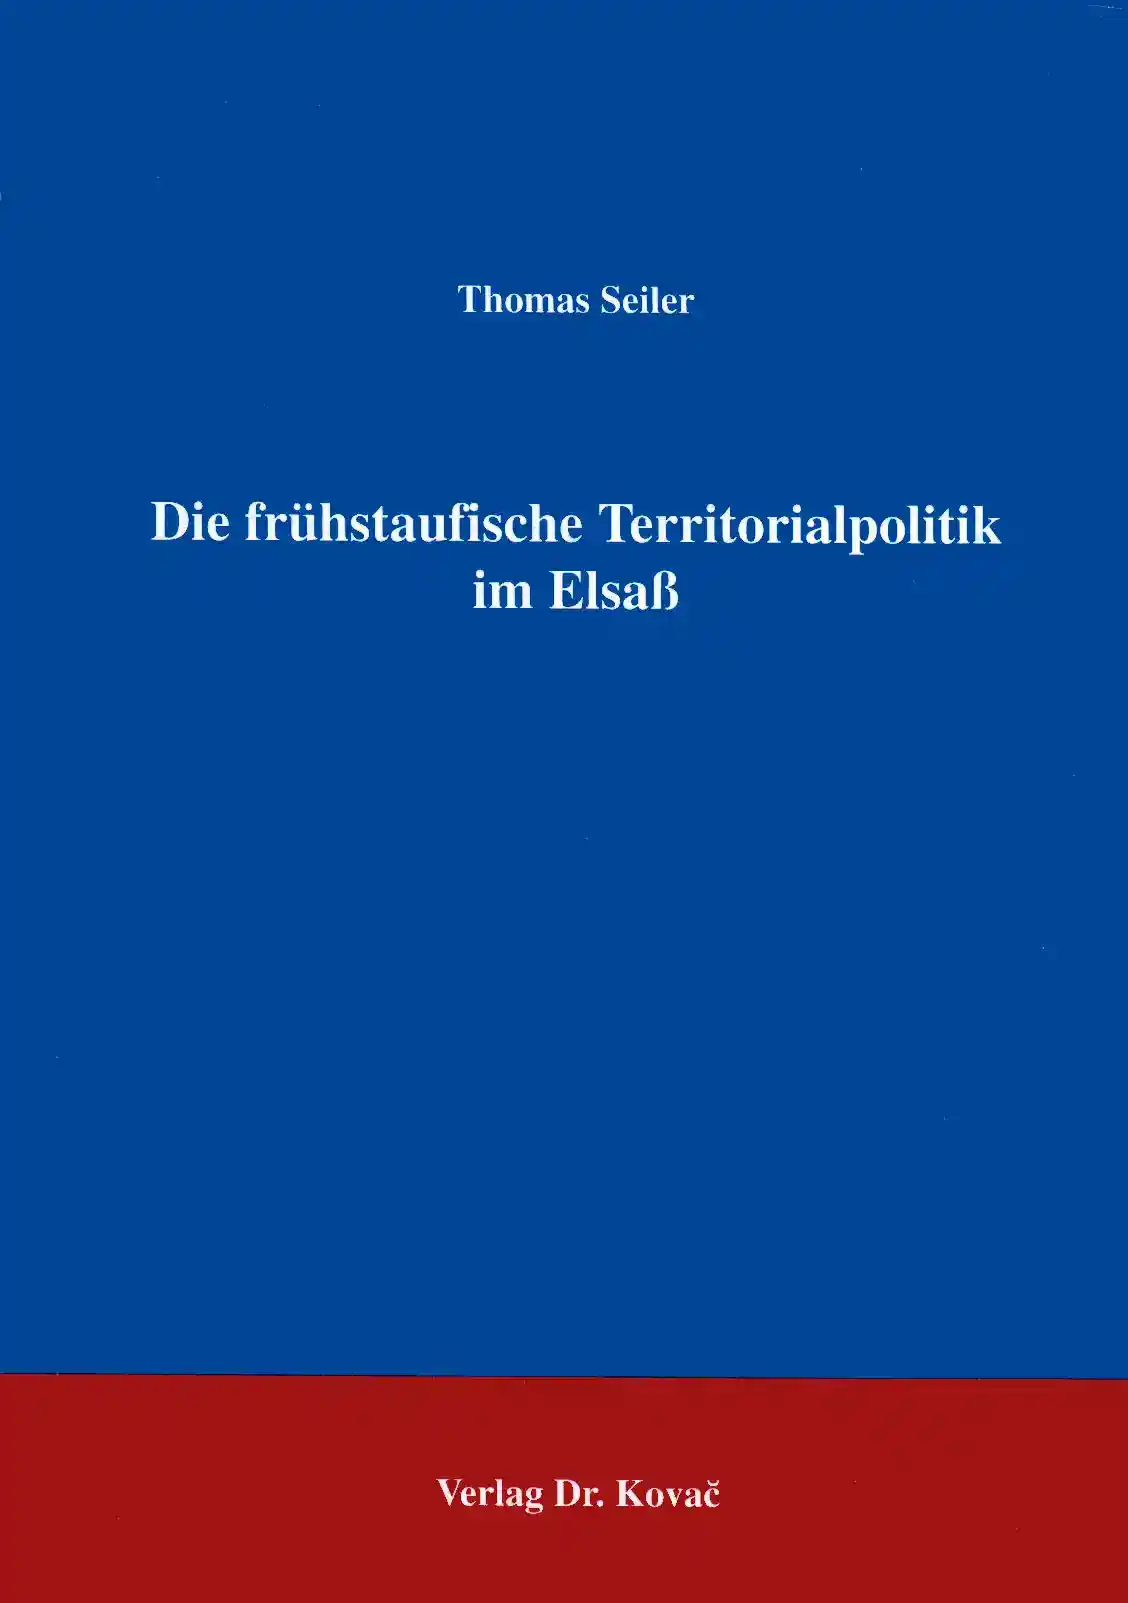  Forschungsarbeit: Die frühstaufische Territorialpolitik im Elsaß